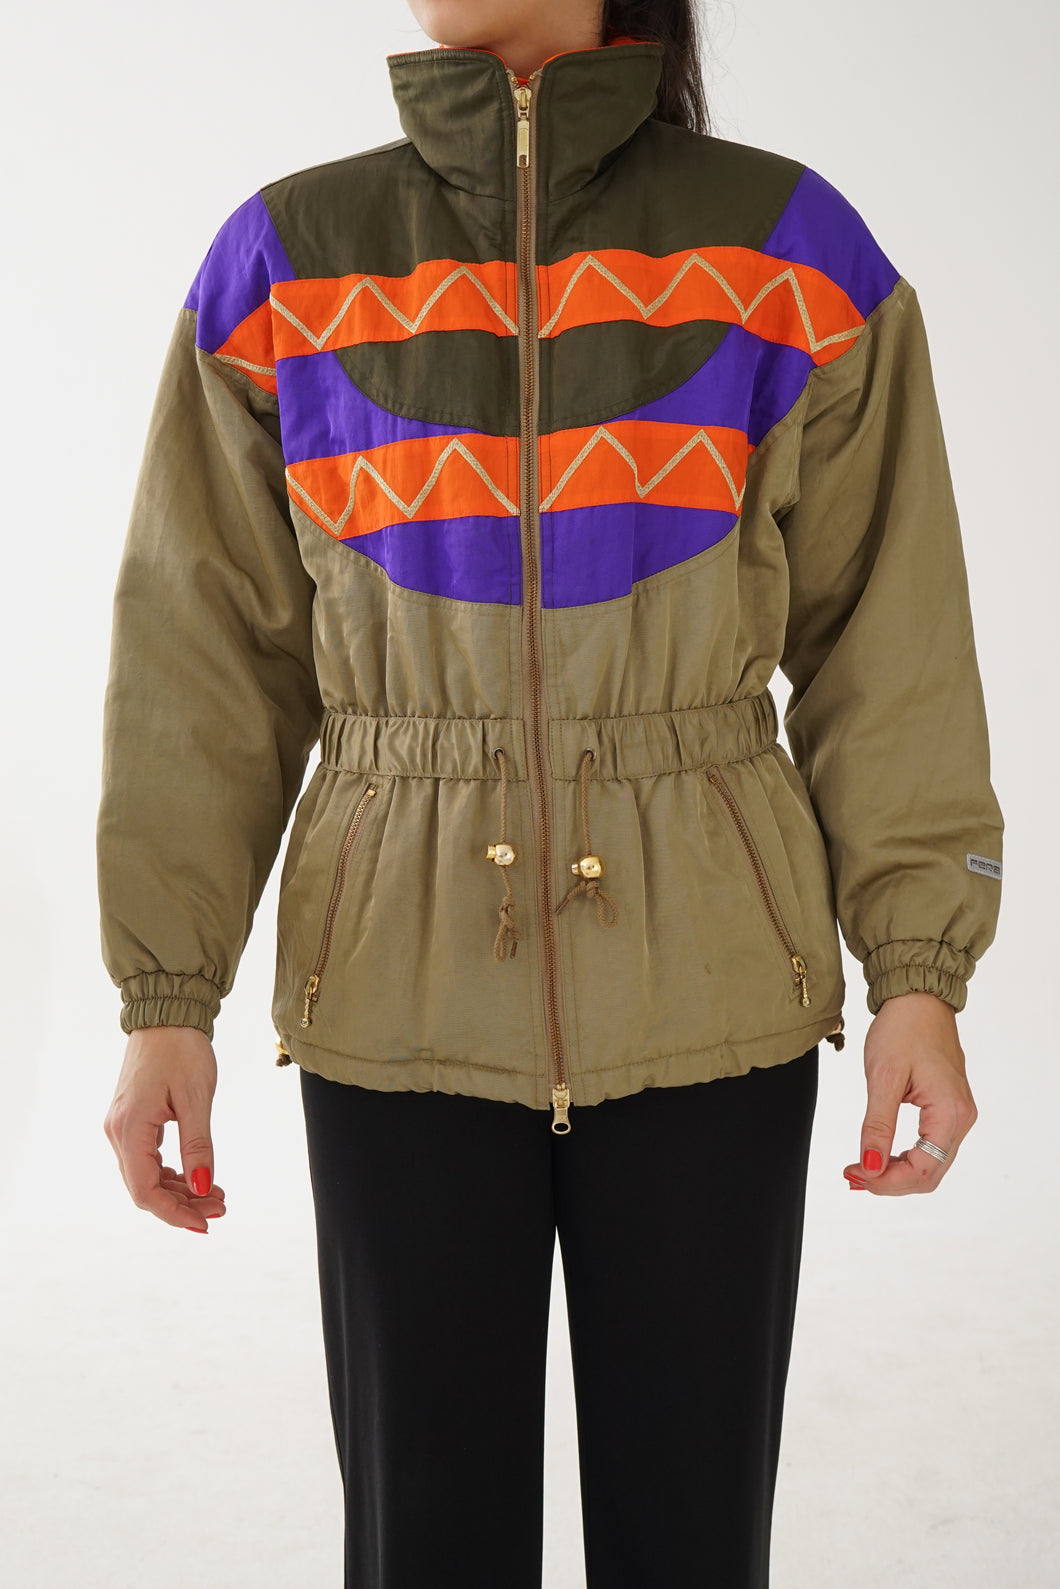 Manteau rétro Fera kaki avec motifs orange, mauve et or pour femme taille 6 (S)